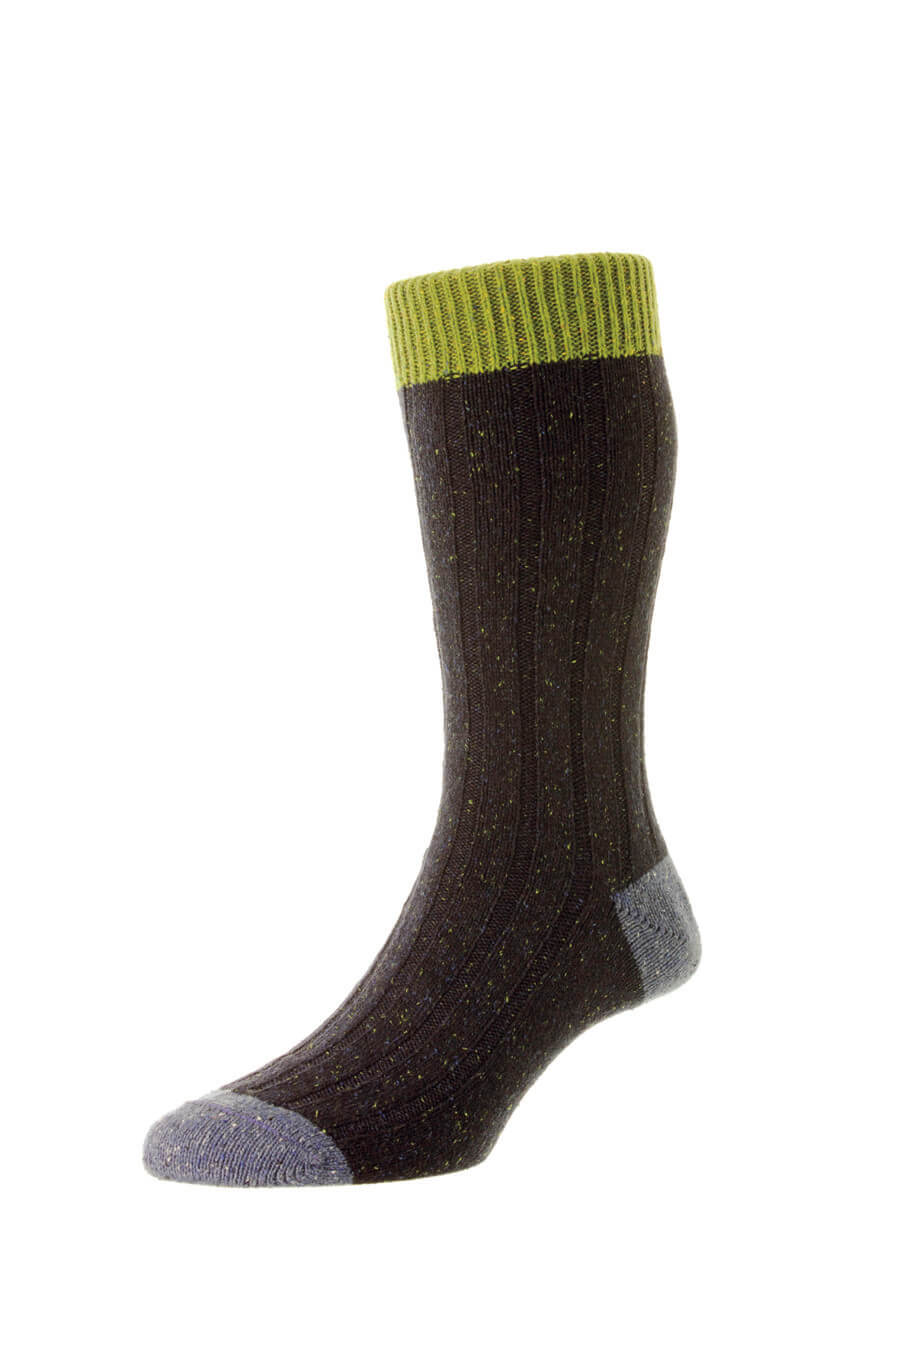 Pantherella Thornham Socks